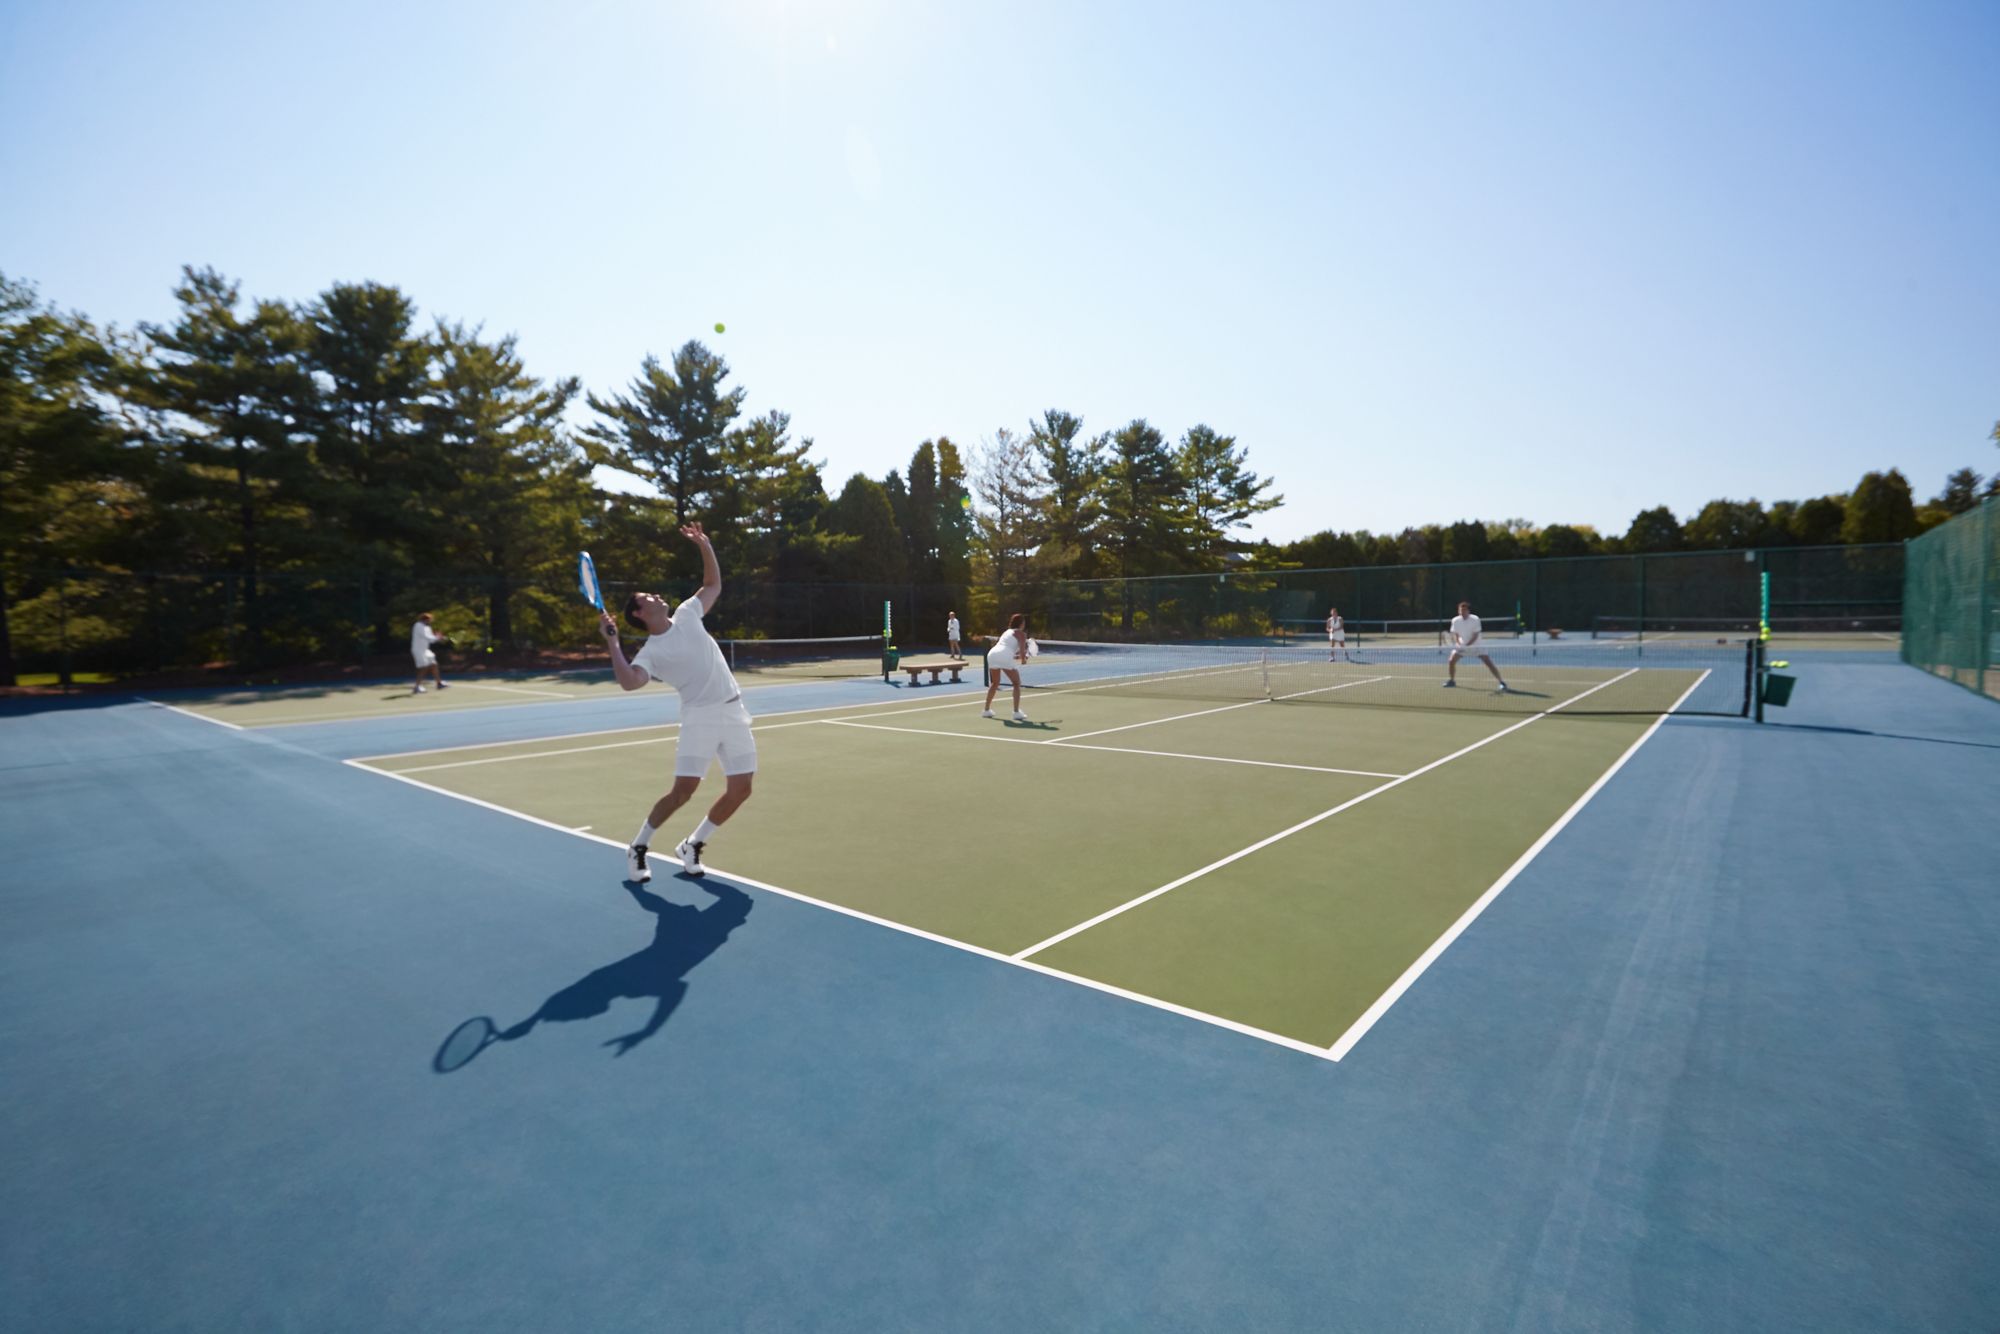 a tennis player serving on an outdoor tennis court